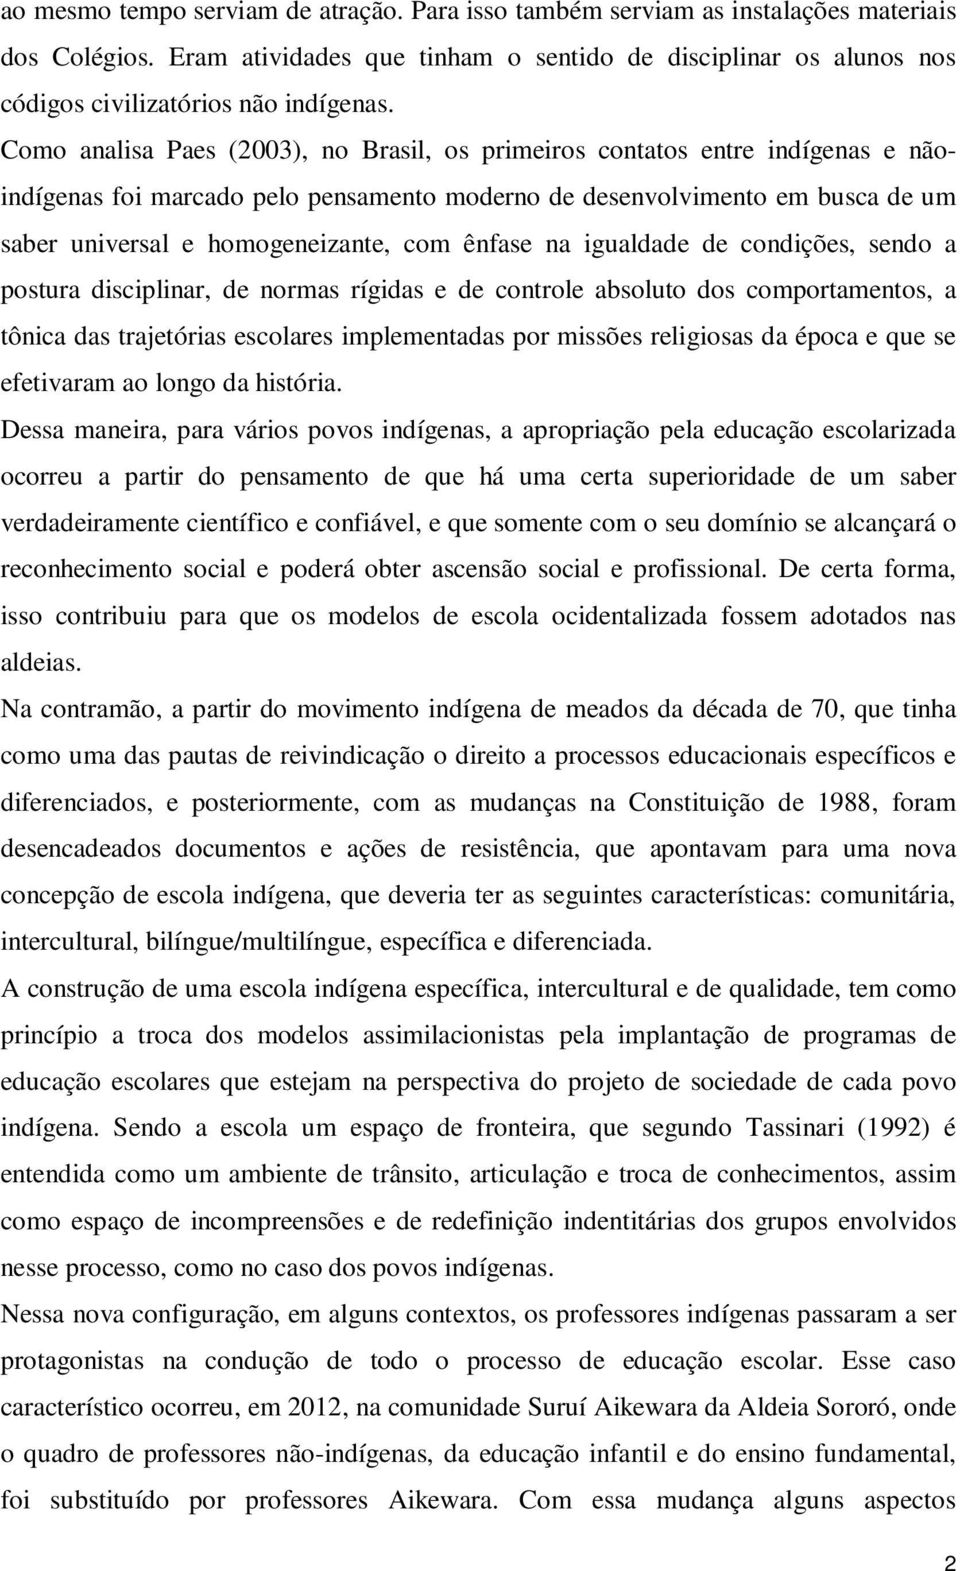 Como analisa Paes (2003), no Brasil, os primeiros contatos entre indígenas e nãoindígenas foi marcado pelo pensamento moderno de desenvolvimento em busca de um saber universal e homogeneizante, com